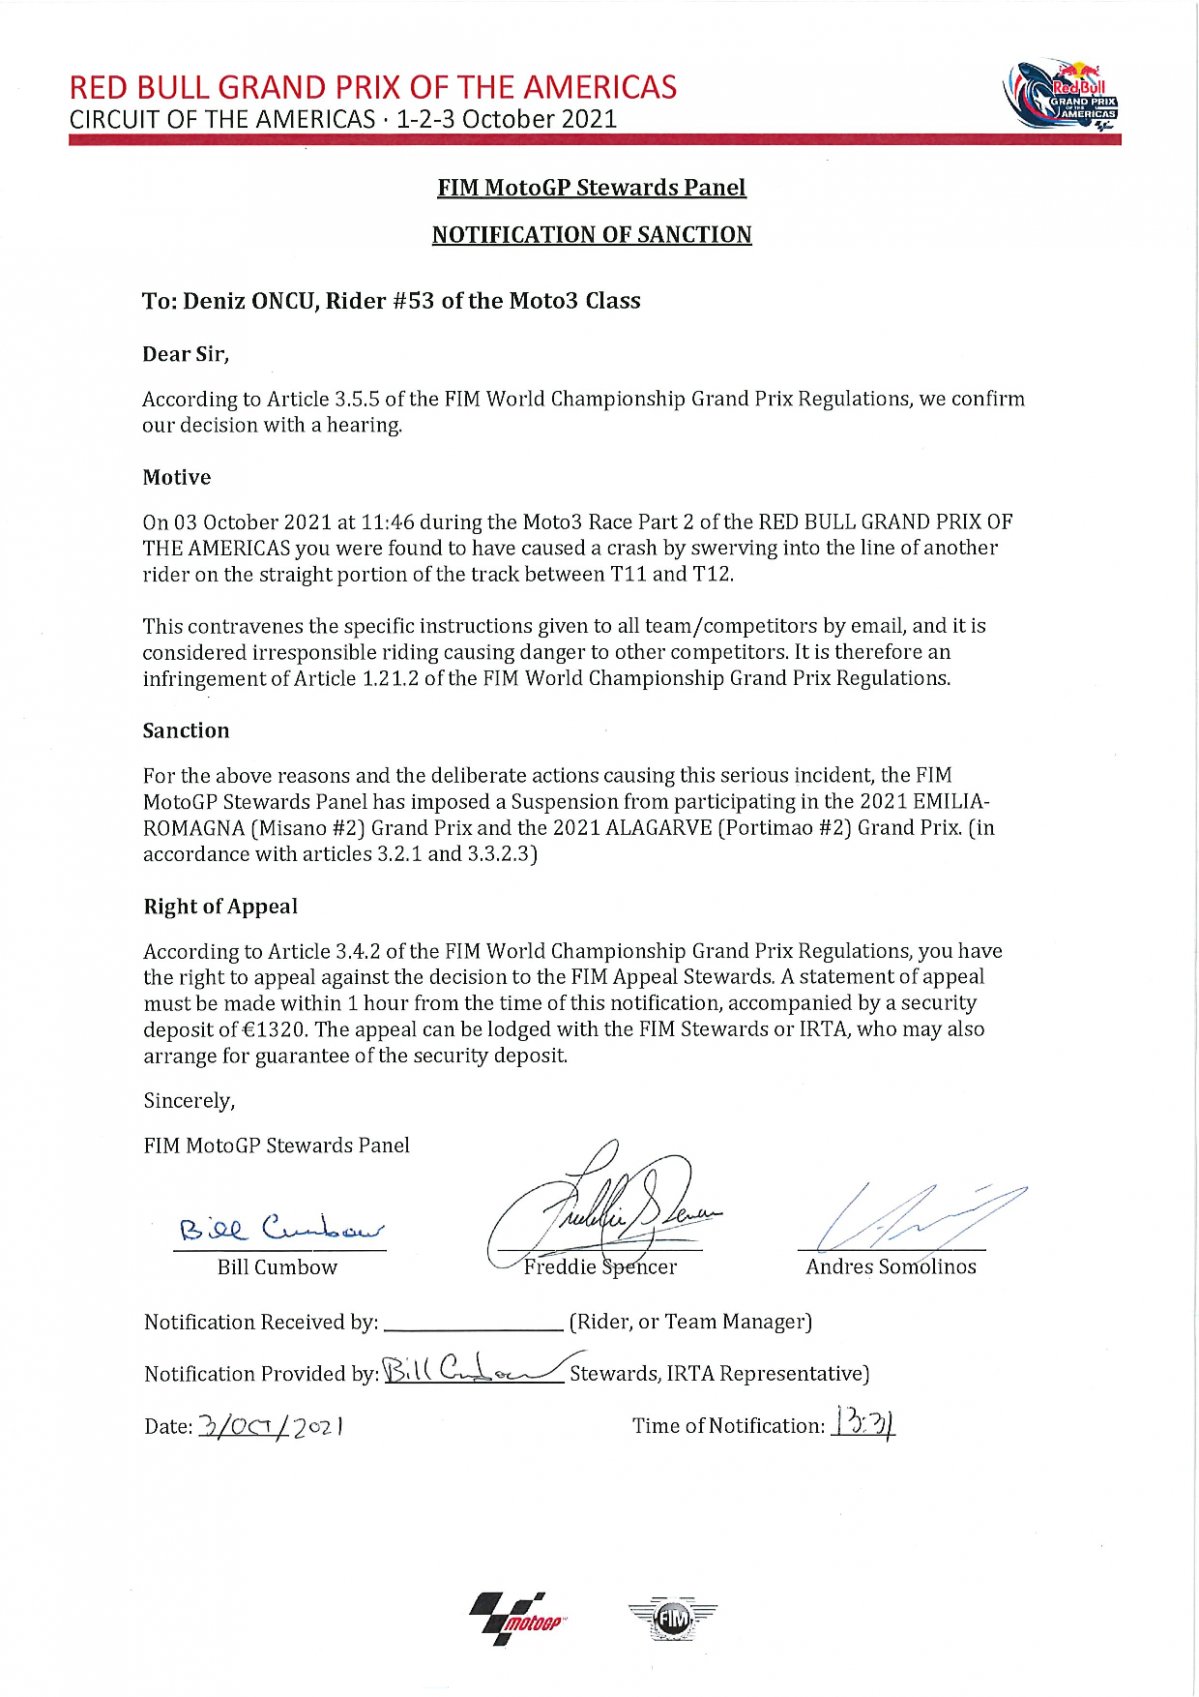 Решение Дирекции MotoGP по инциденту на гонке Moto3 - дисквалификация для Денниса Онжу